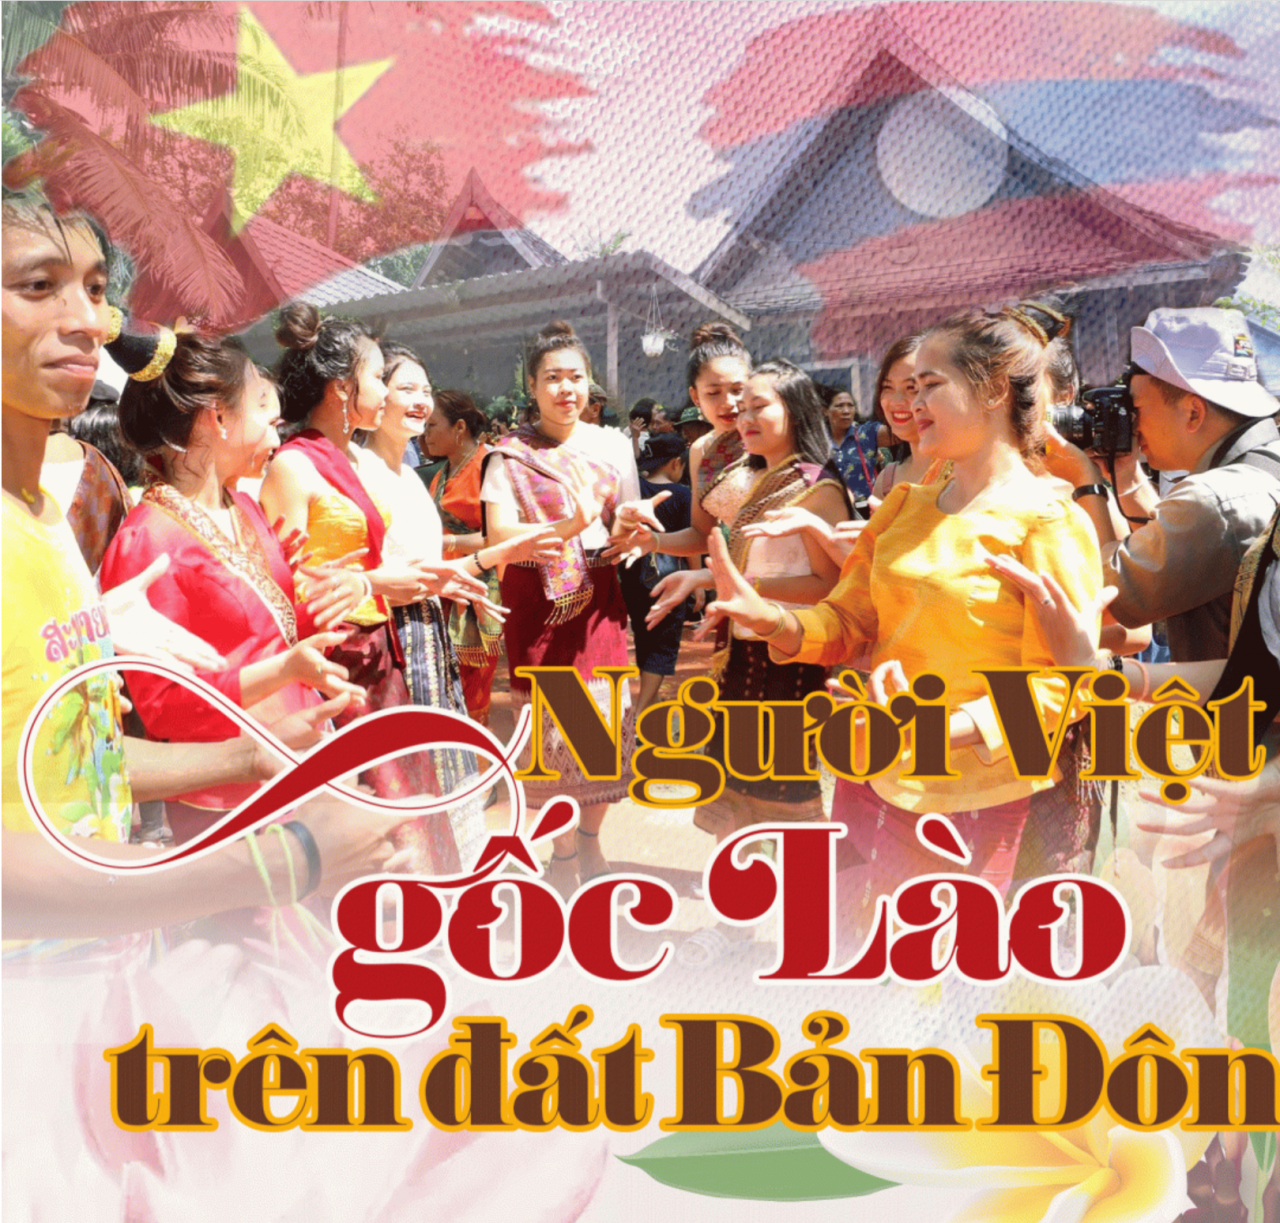 Người Việt gốc Lào trên đất Bản Đôn